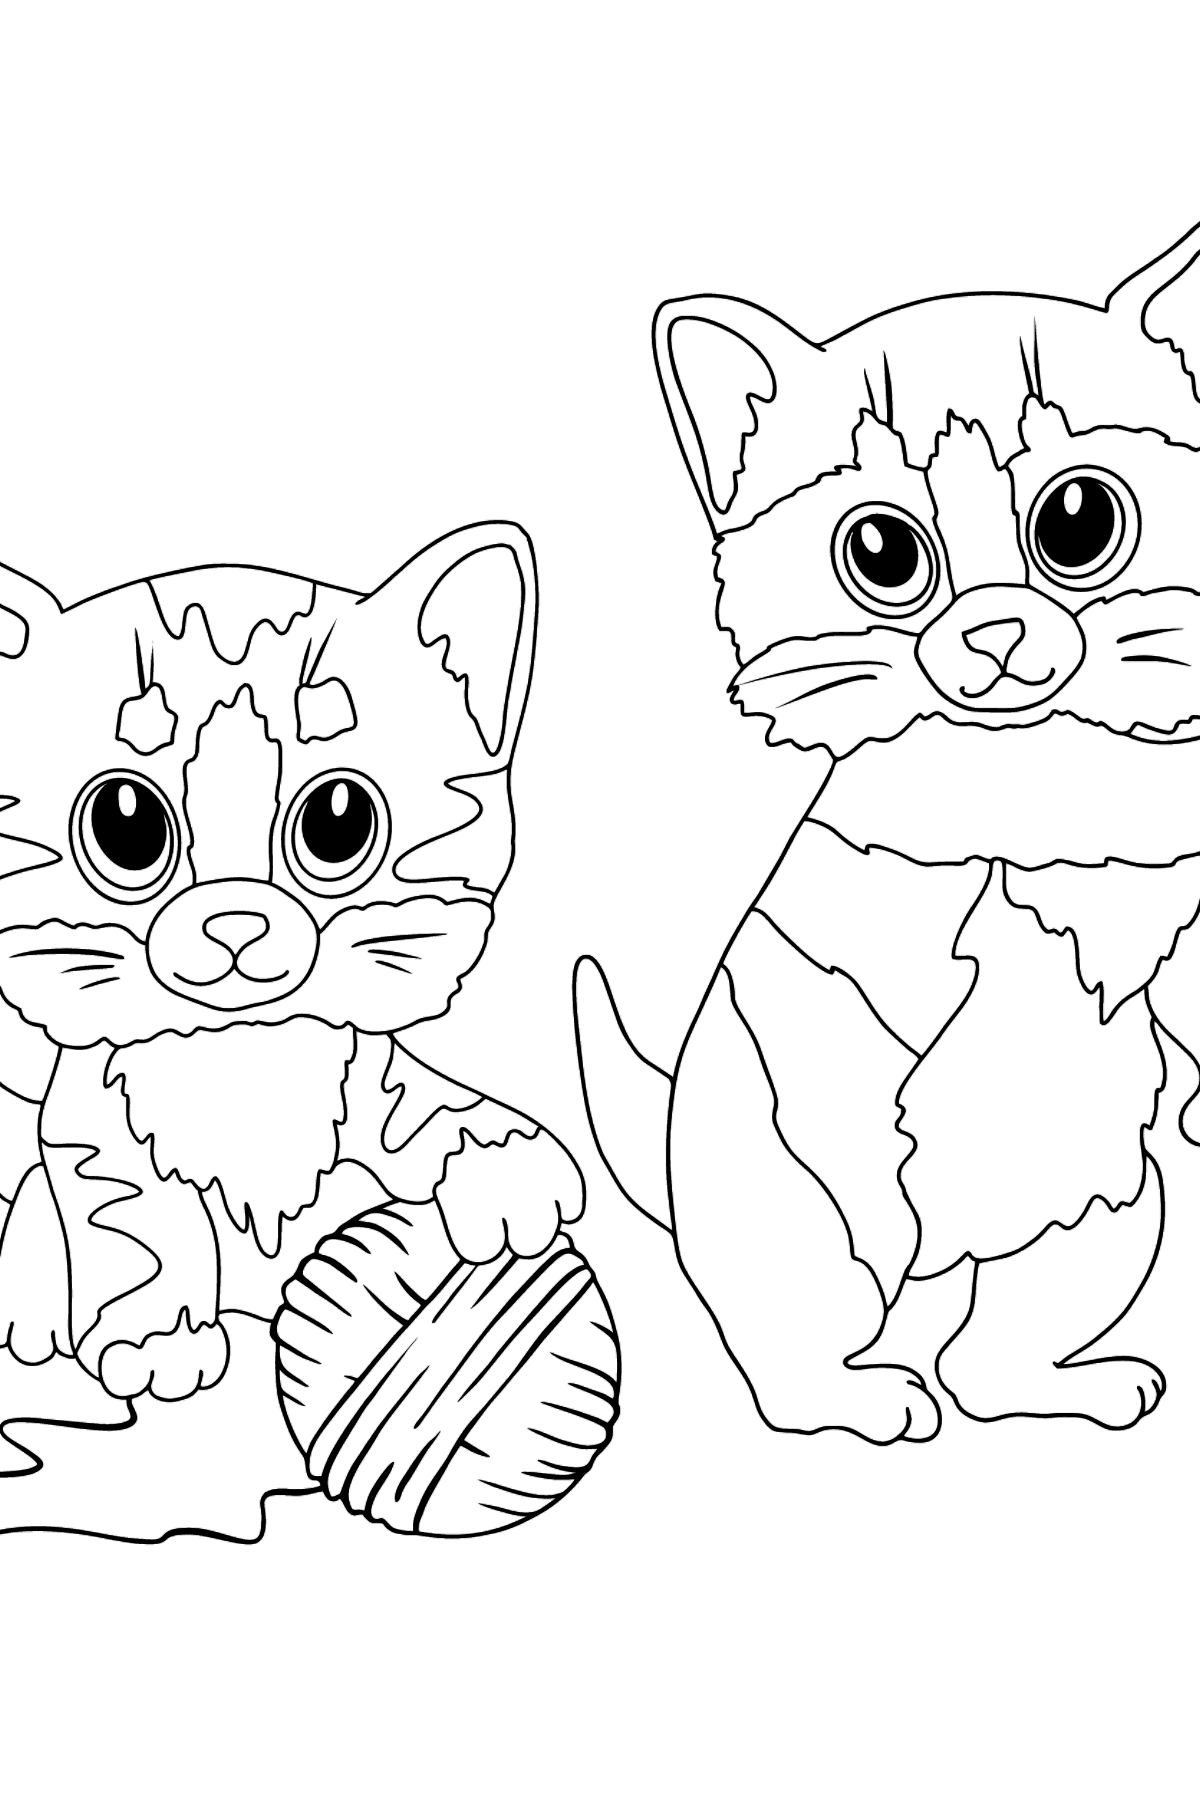 Ausmalbild Katzen und Wollknäuel - Malvorlagen für Kinder